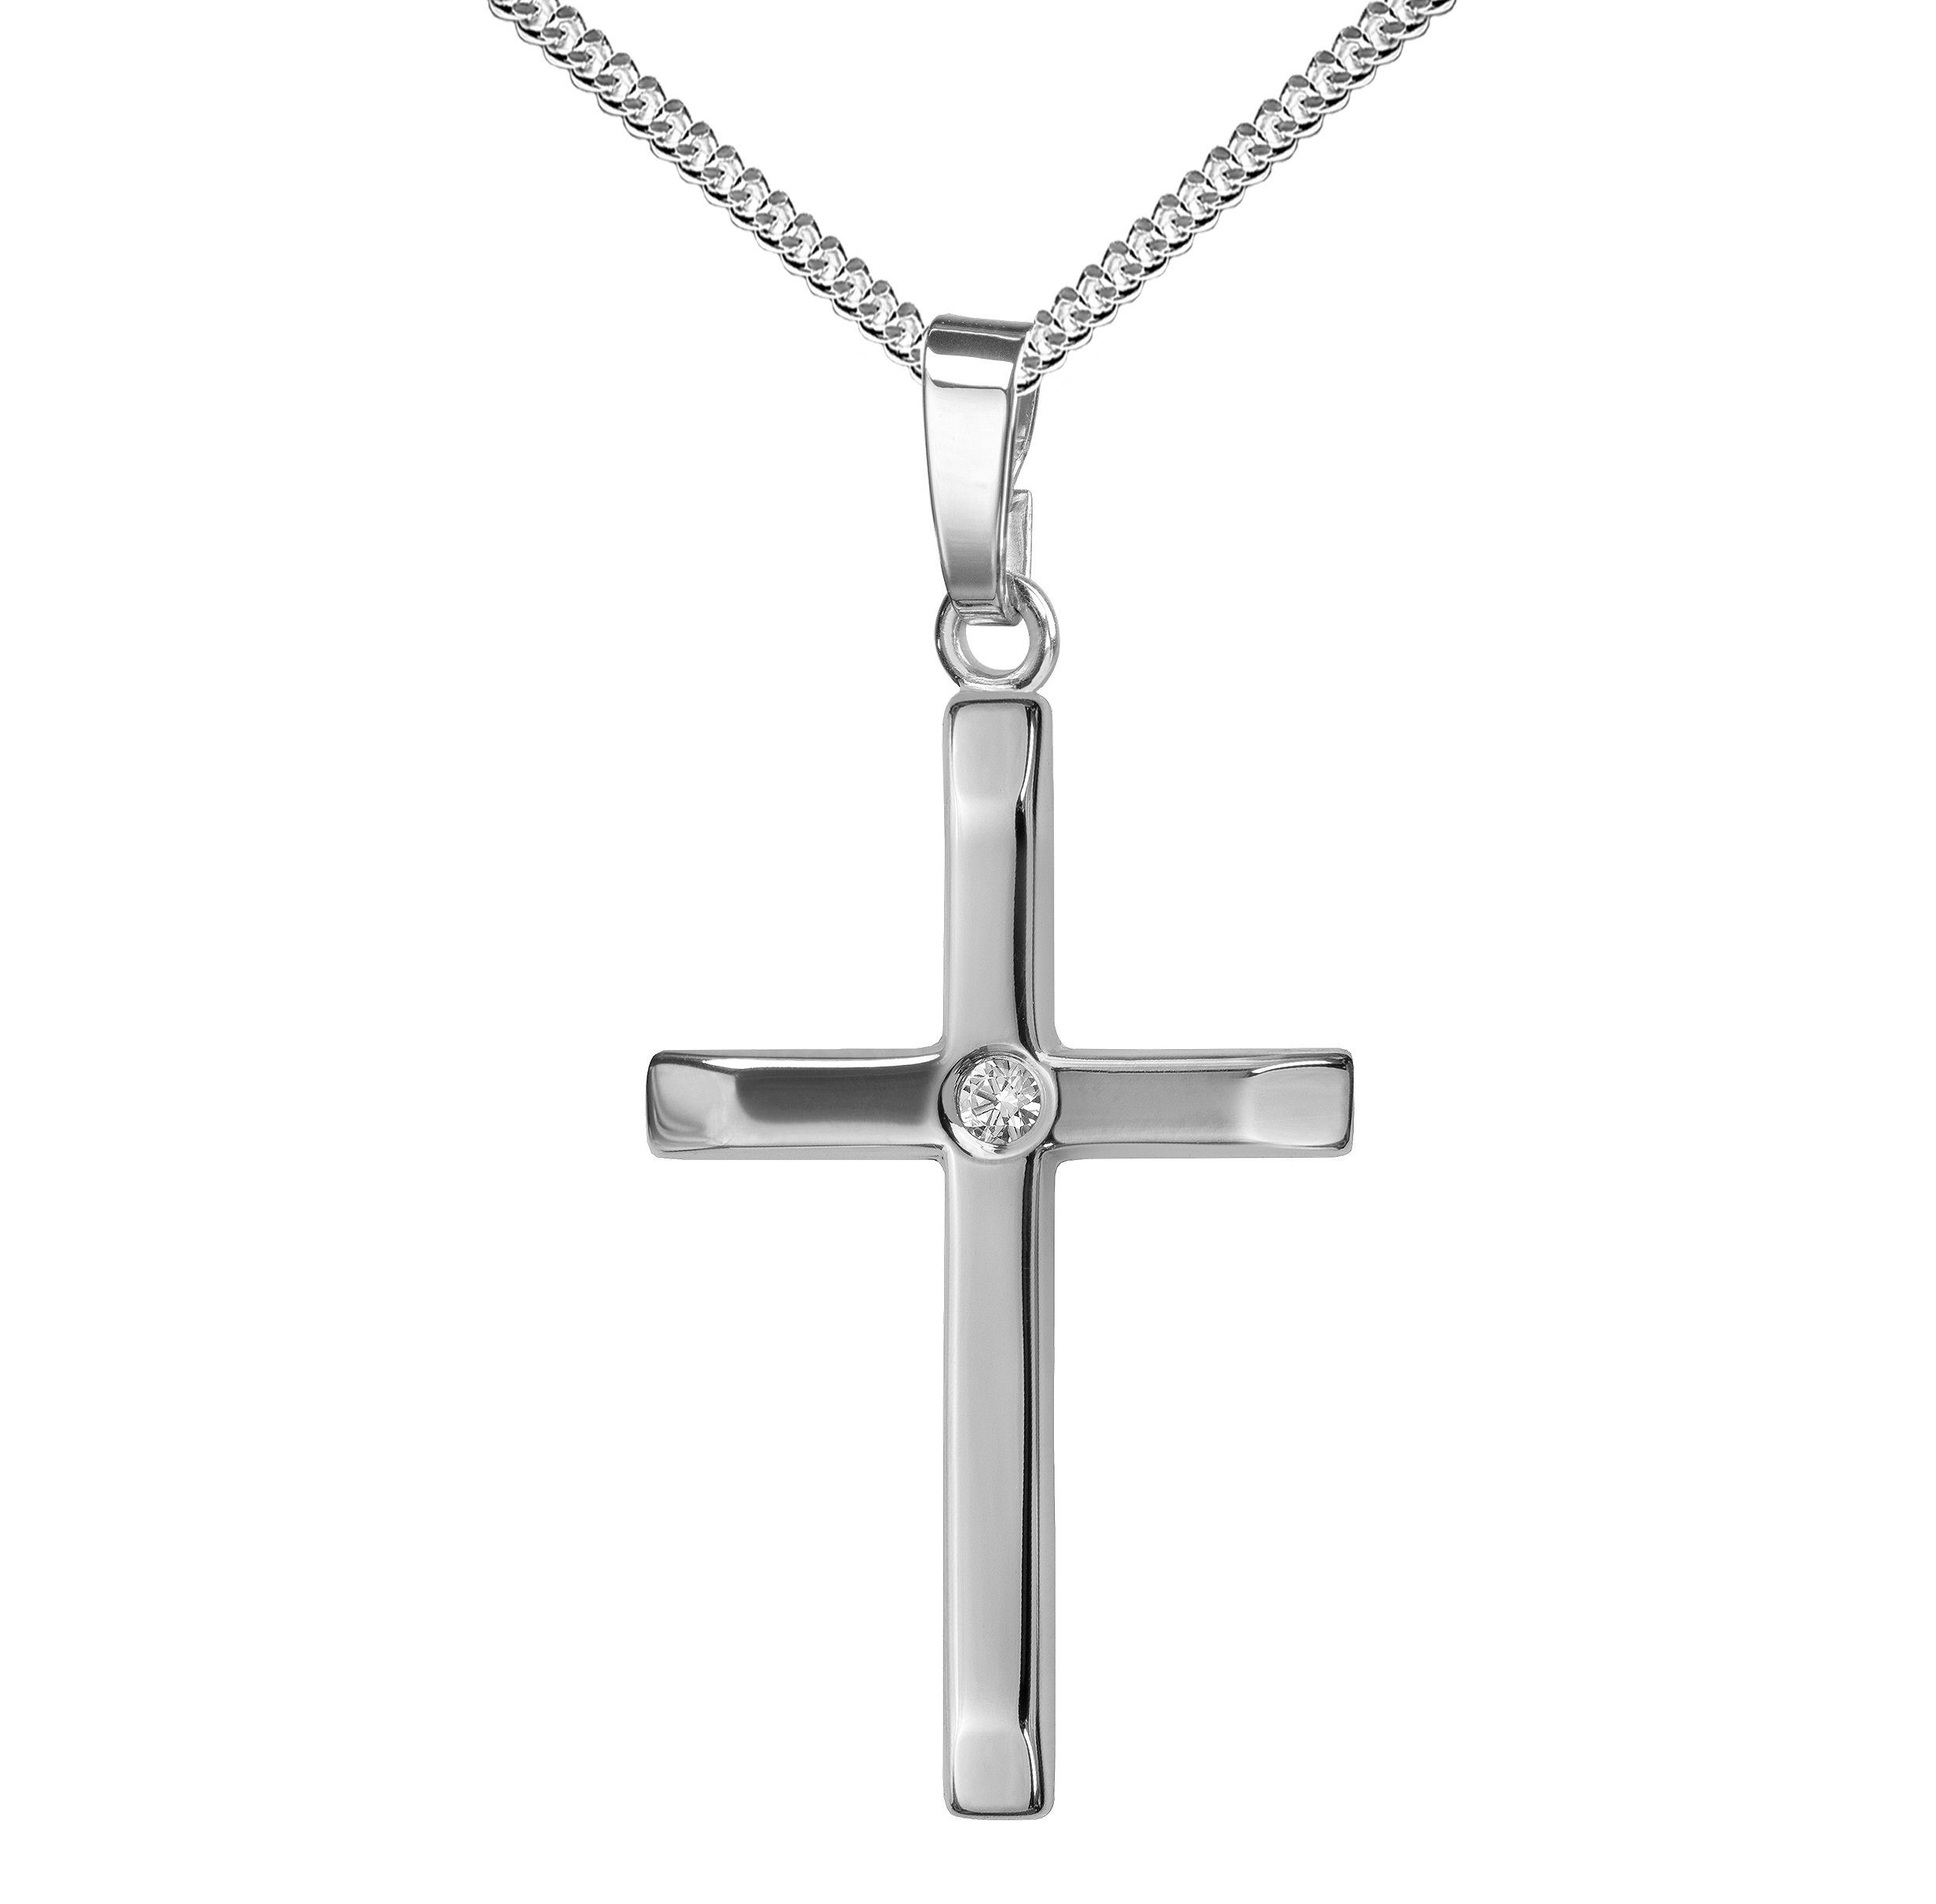 JEVELION Kreuzkette mit Brillant Anhänger 925 Silber - Made in Germany (Silberkreuz, für Damen und Herren), Mit Silberkette 925 - Länge wählbar 36 - 70 cm oder ohne Kette.